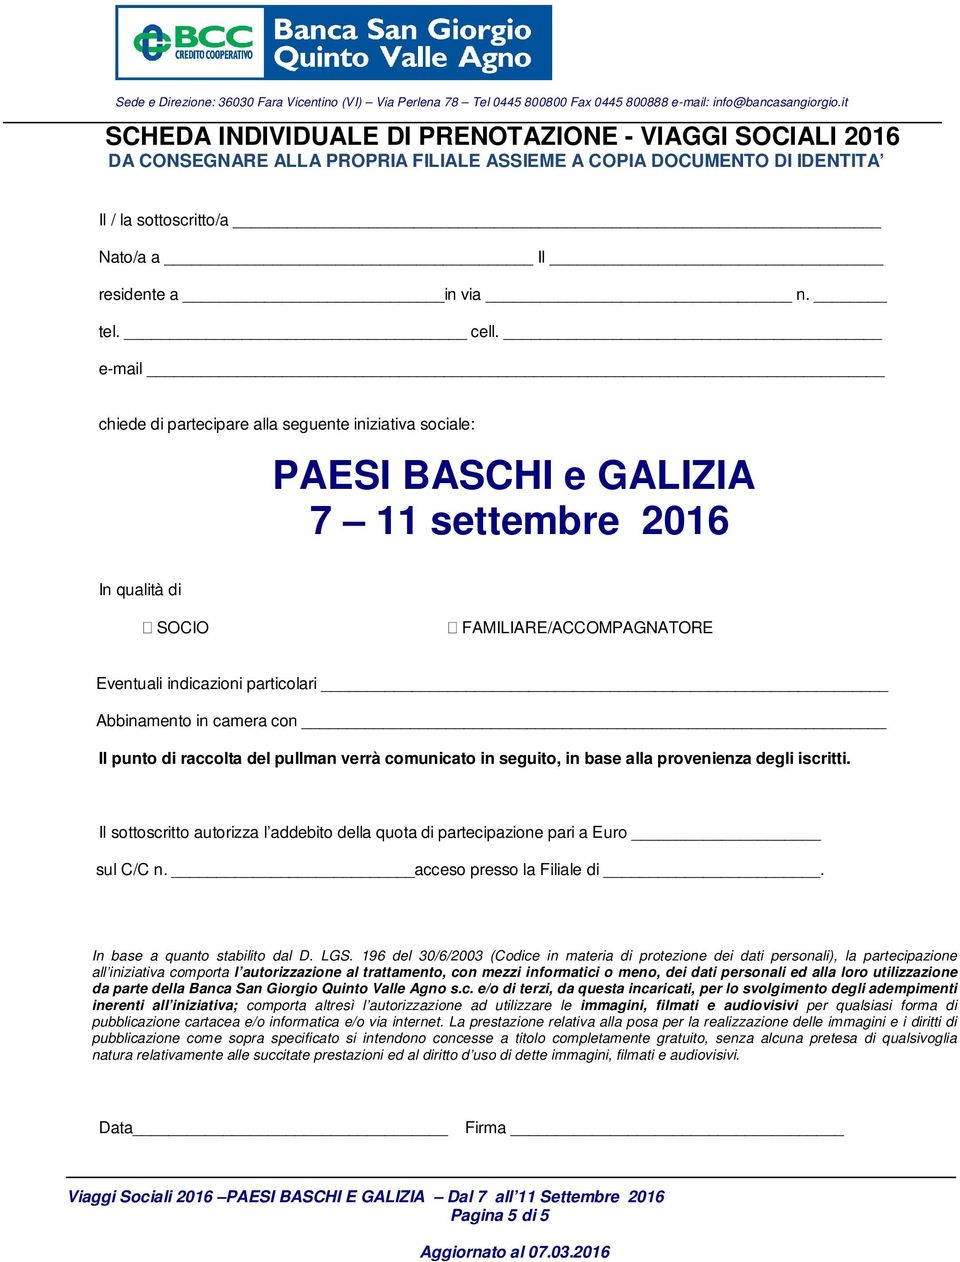 e-mail chiede di partecipare alla seguente iniziativa sociale: PAESI BASCHI e GALIZIA 7 11 settembre 2016 In qualità di SOCIO FAMILIARE/ACCOMPAGNATORE Eventuali indicazioni particolari Abbinamento in